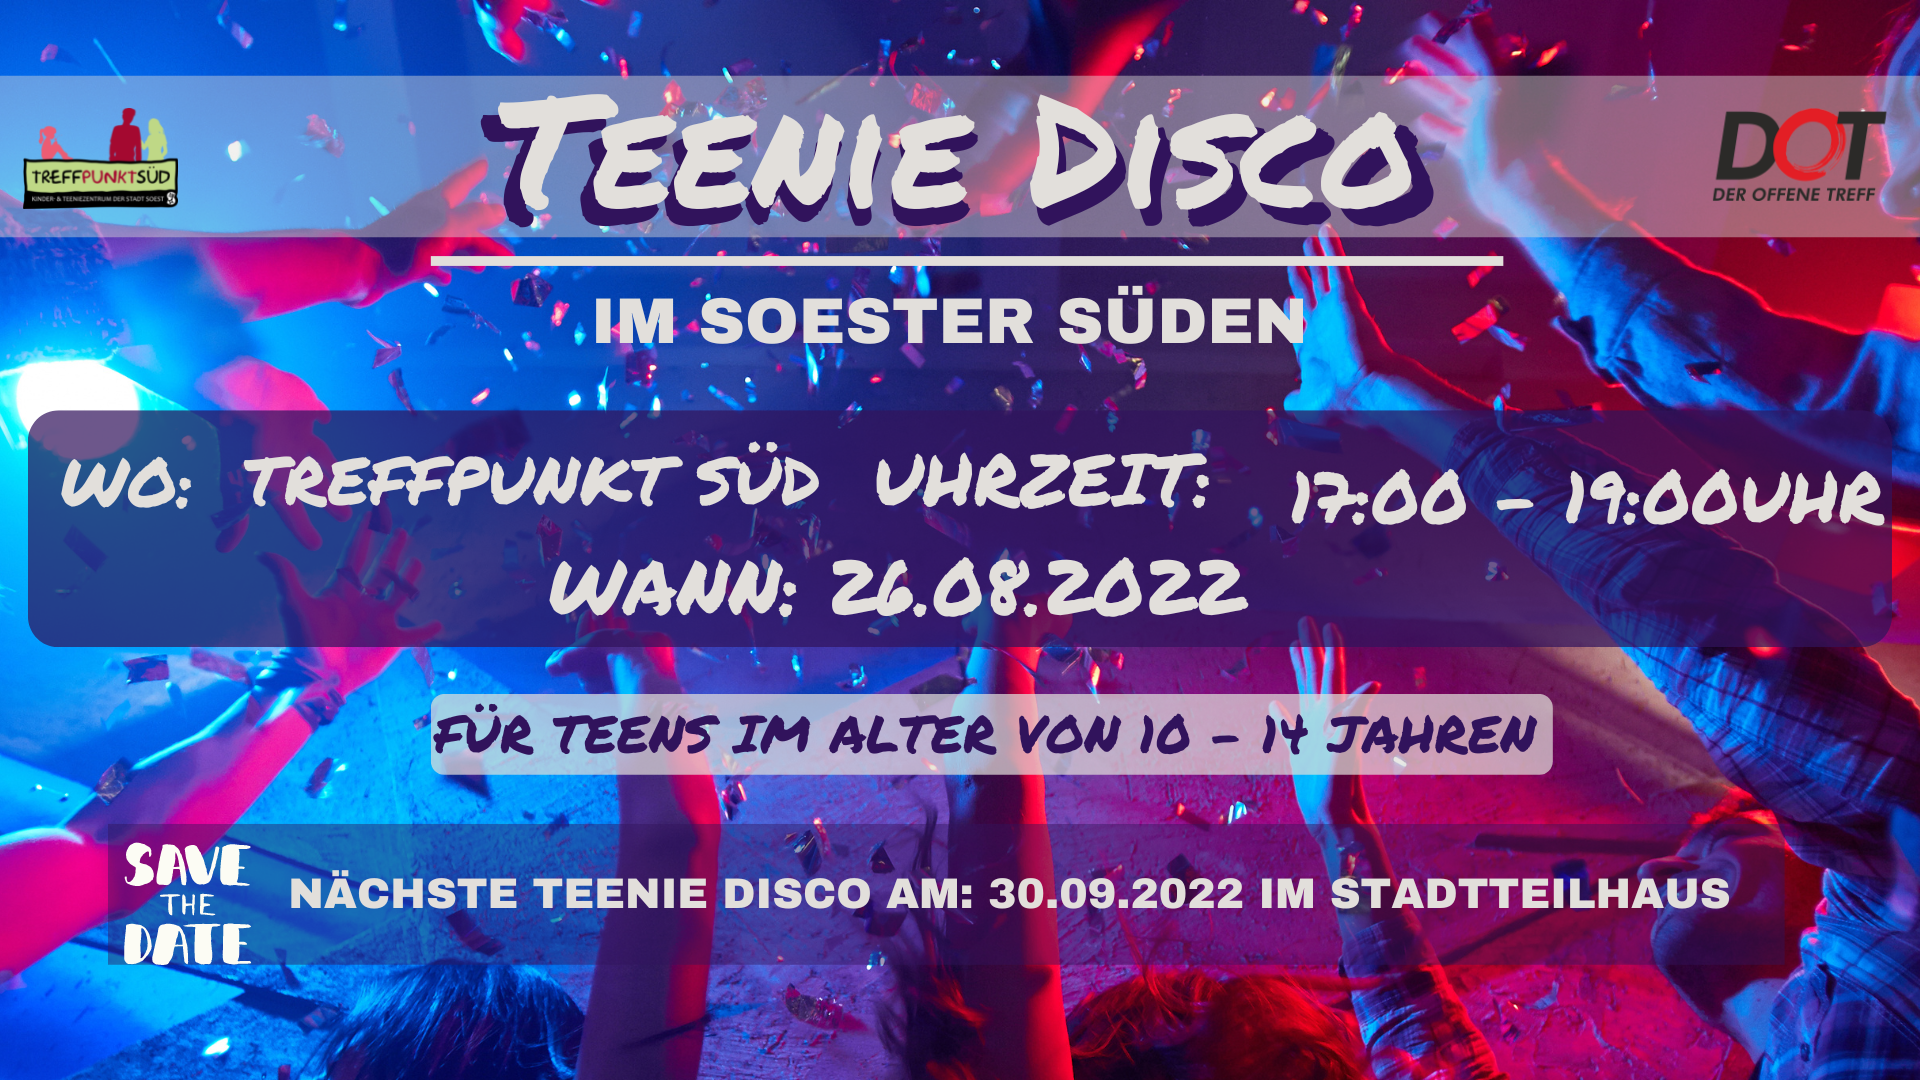 Teenie Disco Wo: Treffpunkt SüdUhrzeit: 17:00 - 19:00 UhrWann: 26.08.2022Save the Date: 30.09.2022 im Stadtteilhaus